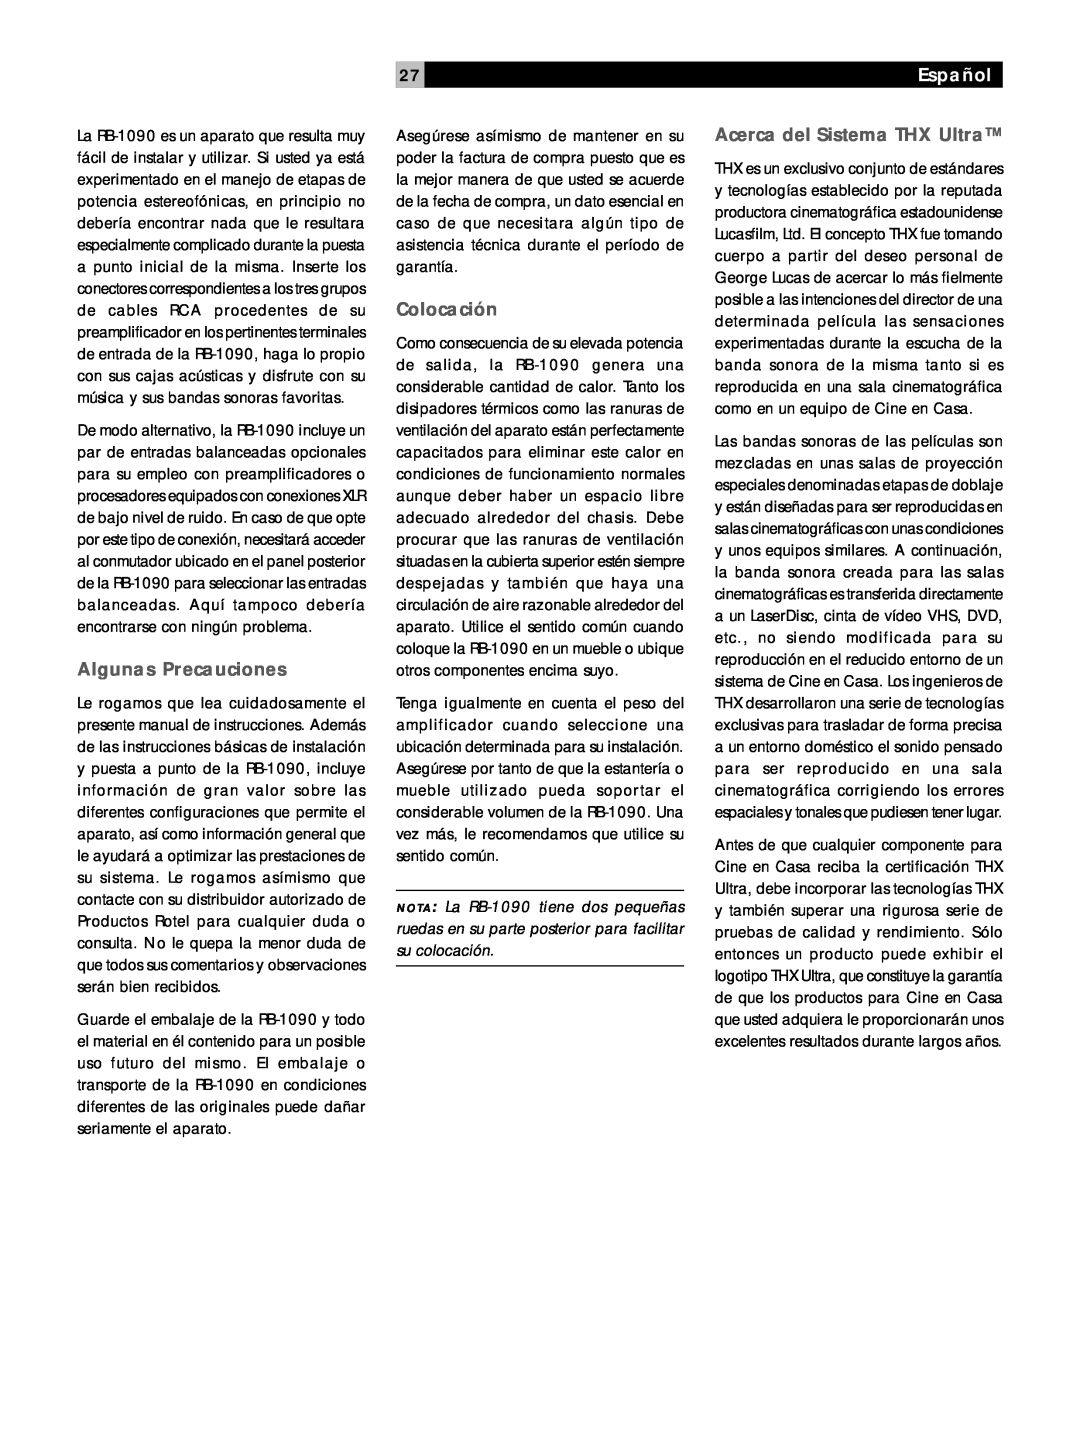 Rotel RB1090 owner manual Algunas Precauciones, Colocación, Acerca del Sistema THX Ultra, Español 